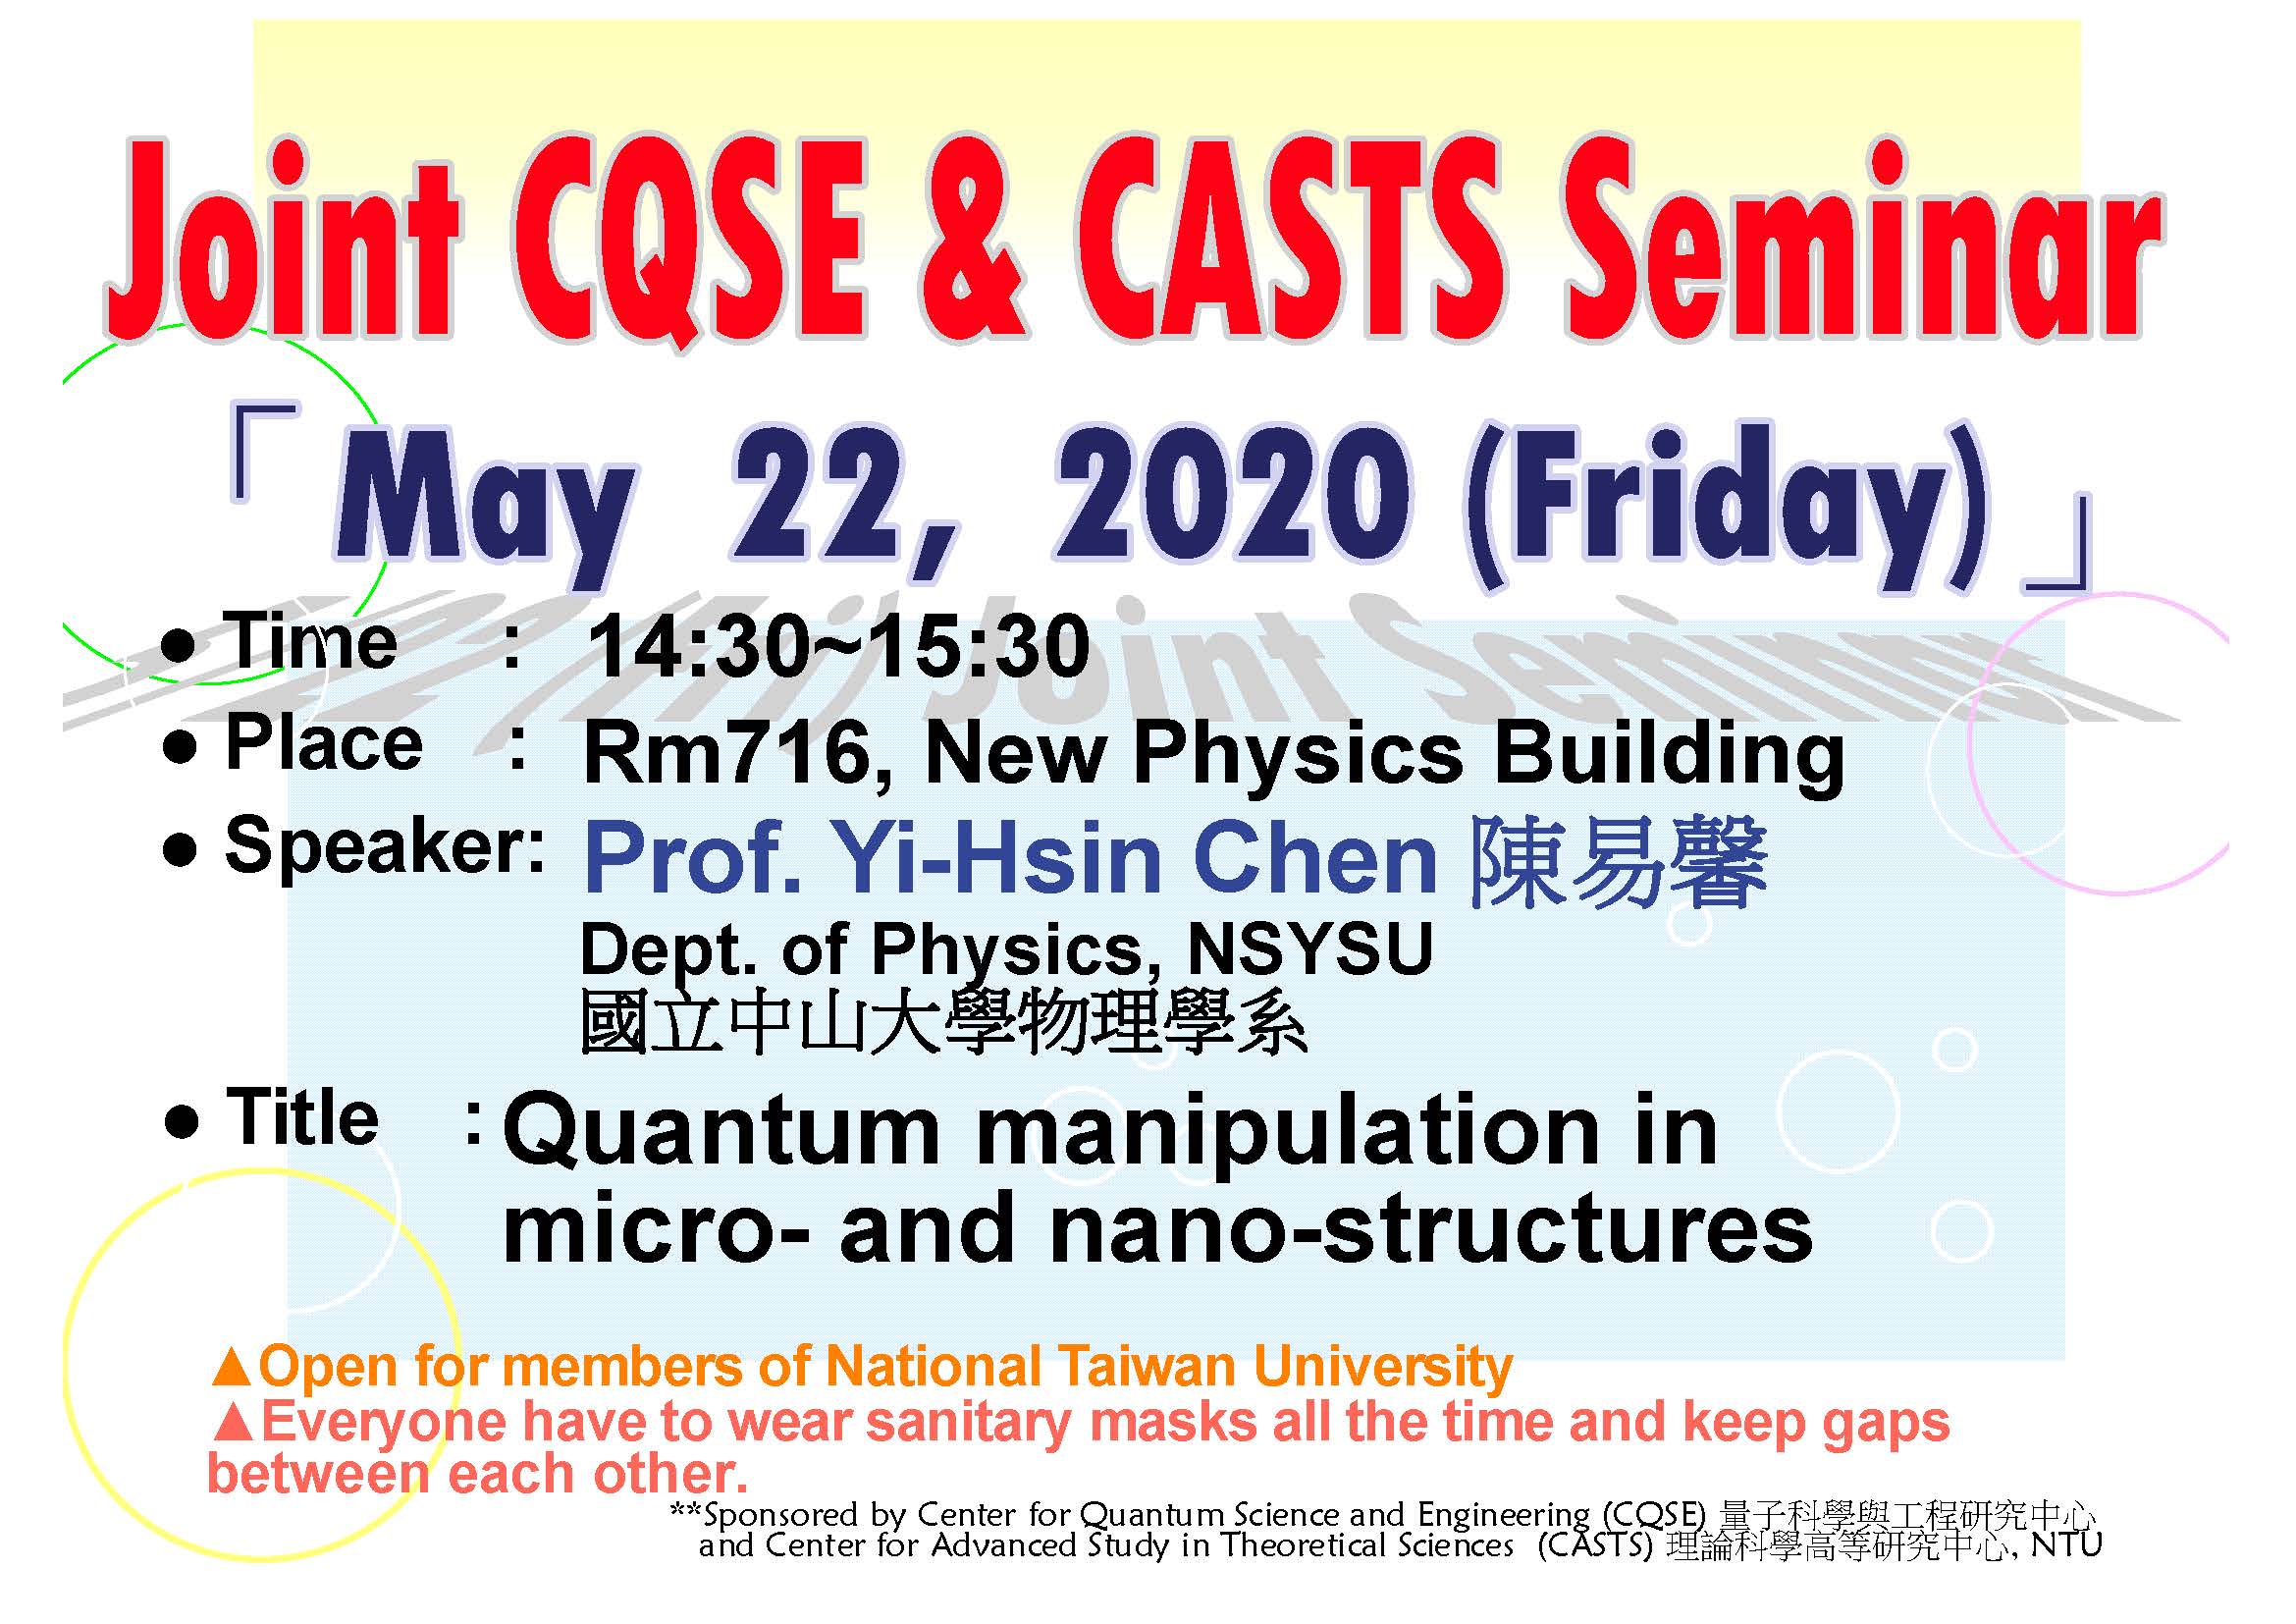 Joint CQSE and CASTS Seminar